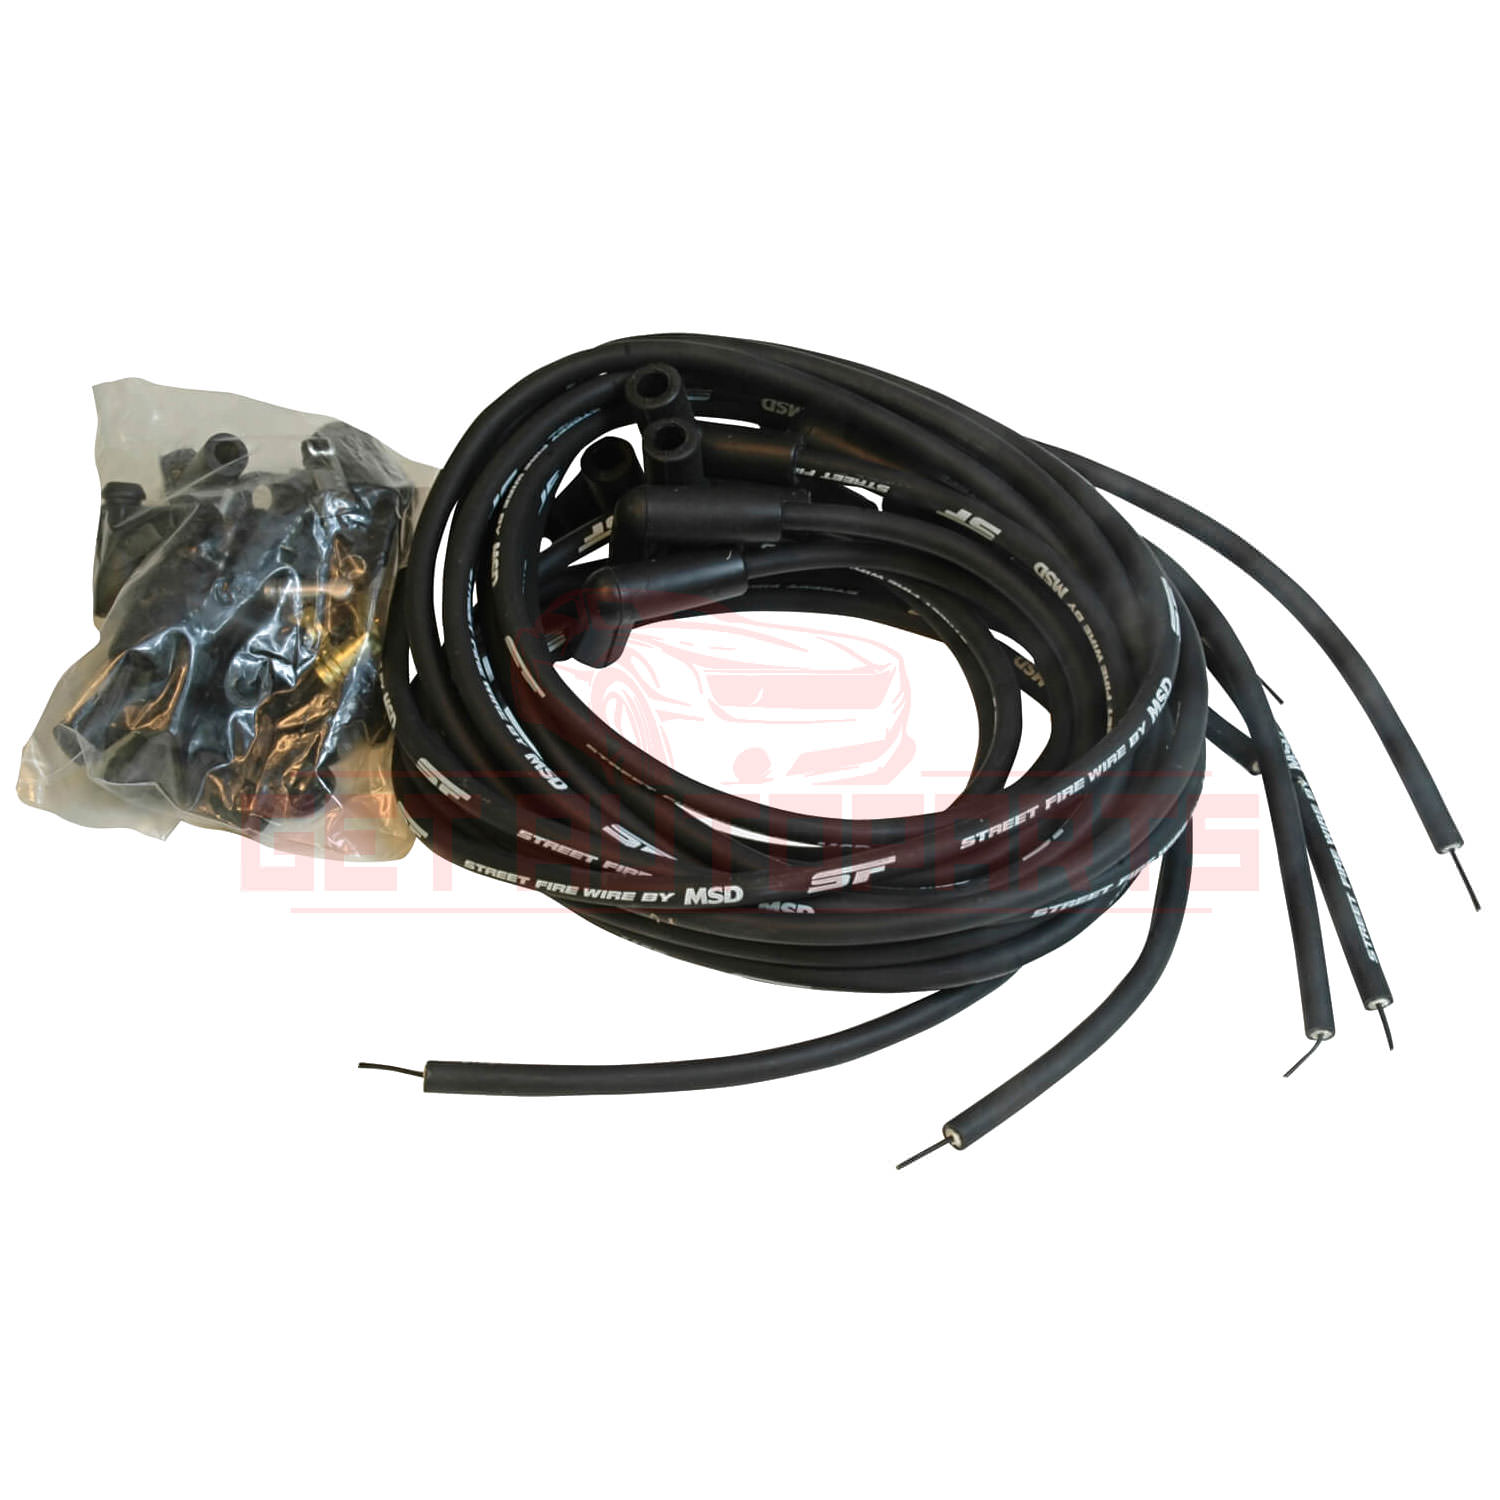 MSD Spark Plug Wire Set for Oldsmobile 98 1975-1984